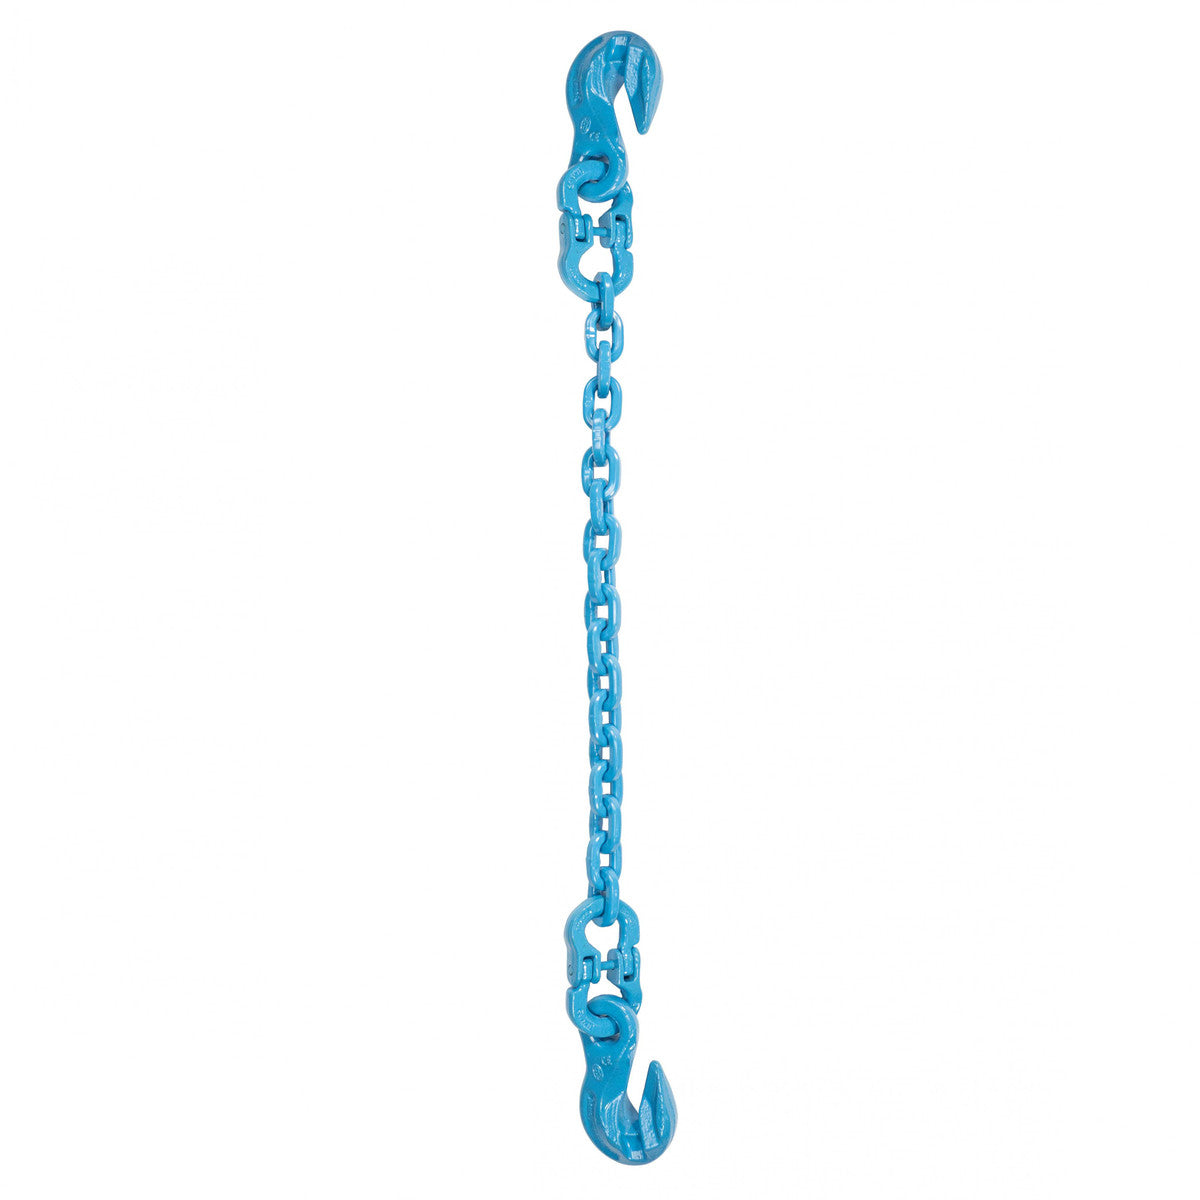 9/32" x 10' - Pewag Single Leg Chain Sling w/ Grab & Grab Hooks - Grade 120